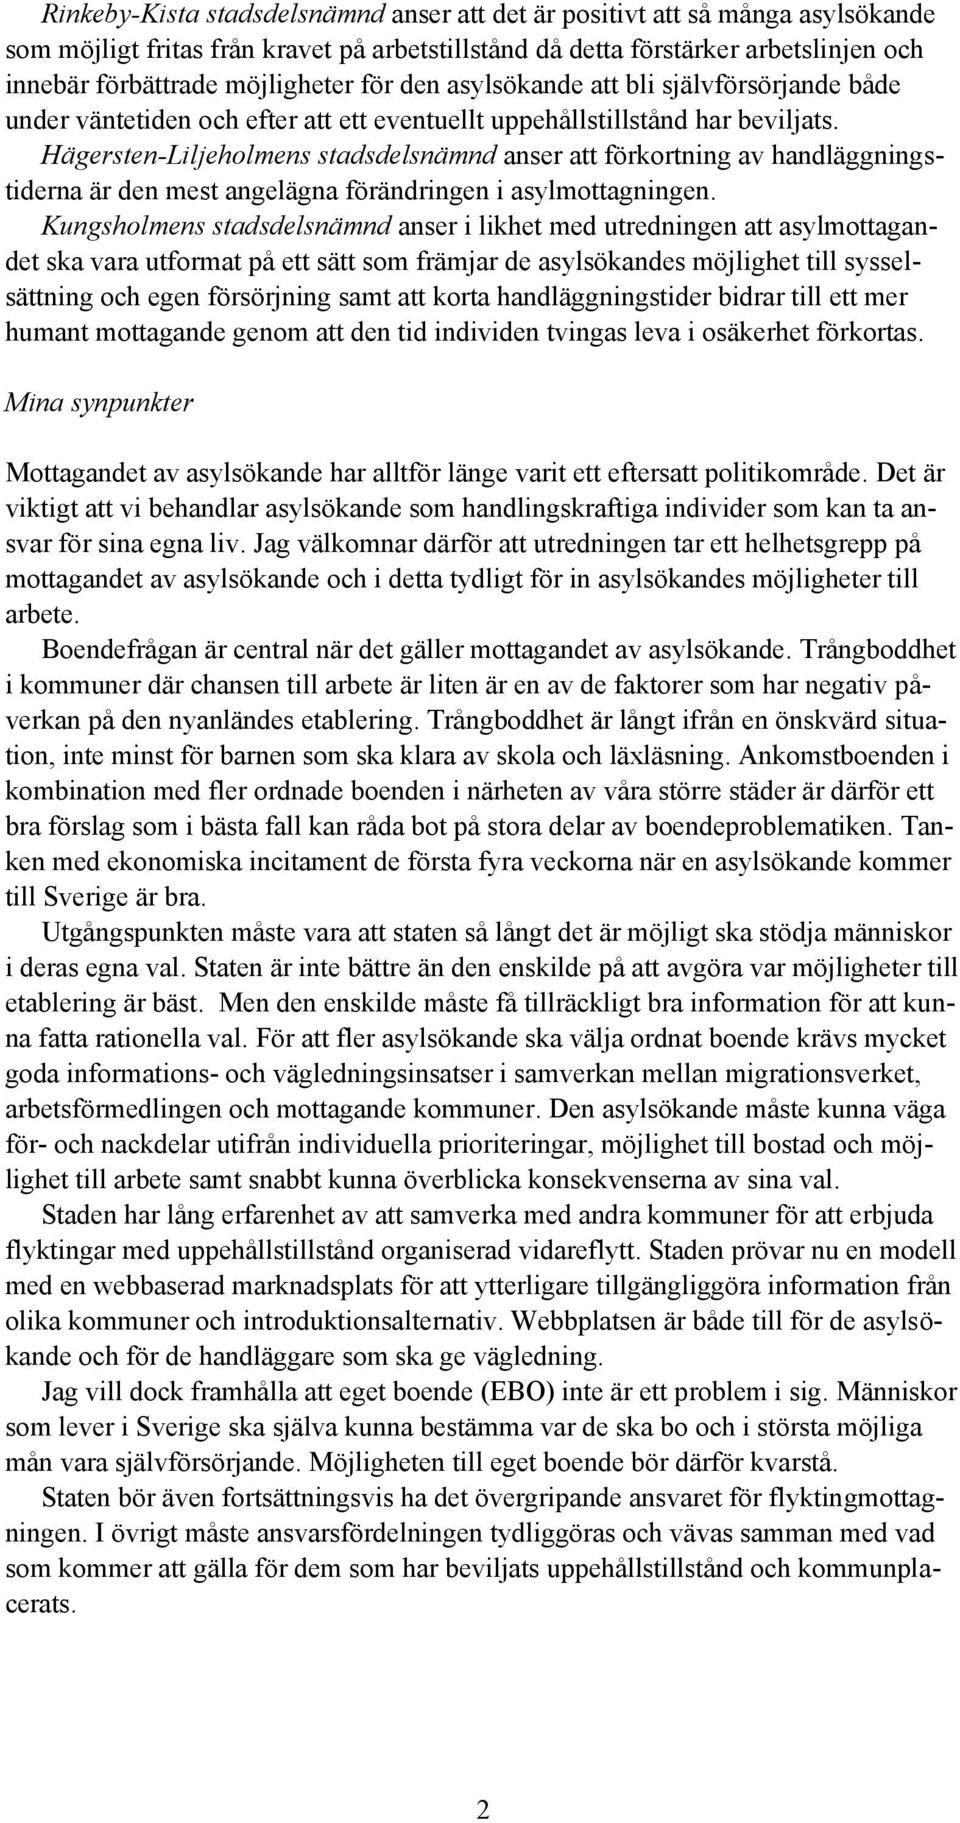 Hägersten-Liljeholmens stadsdelsnämnd anser att förkortning av handläggningstiderna är den mest angelägna förändringen i asylmottagningen.